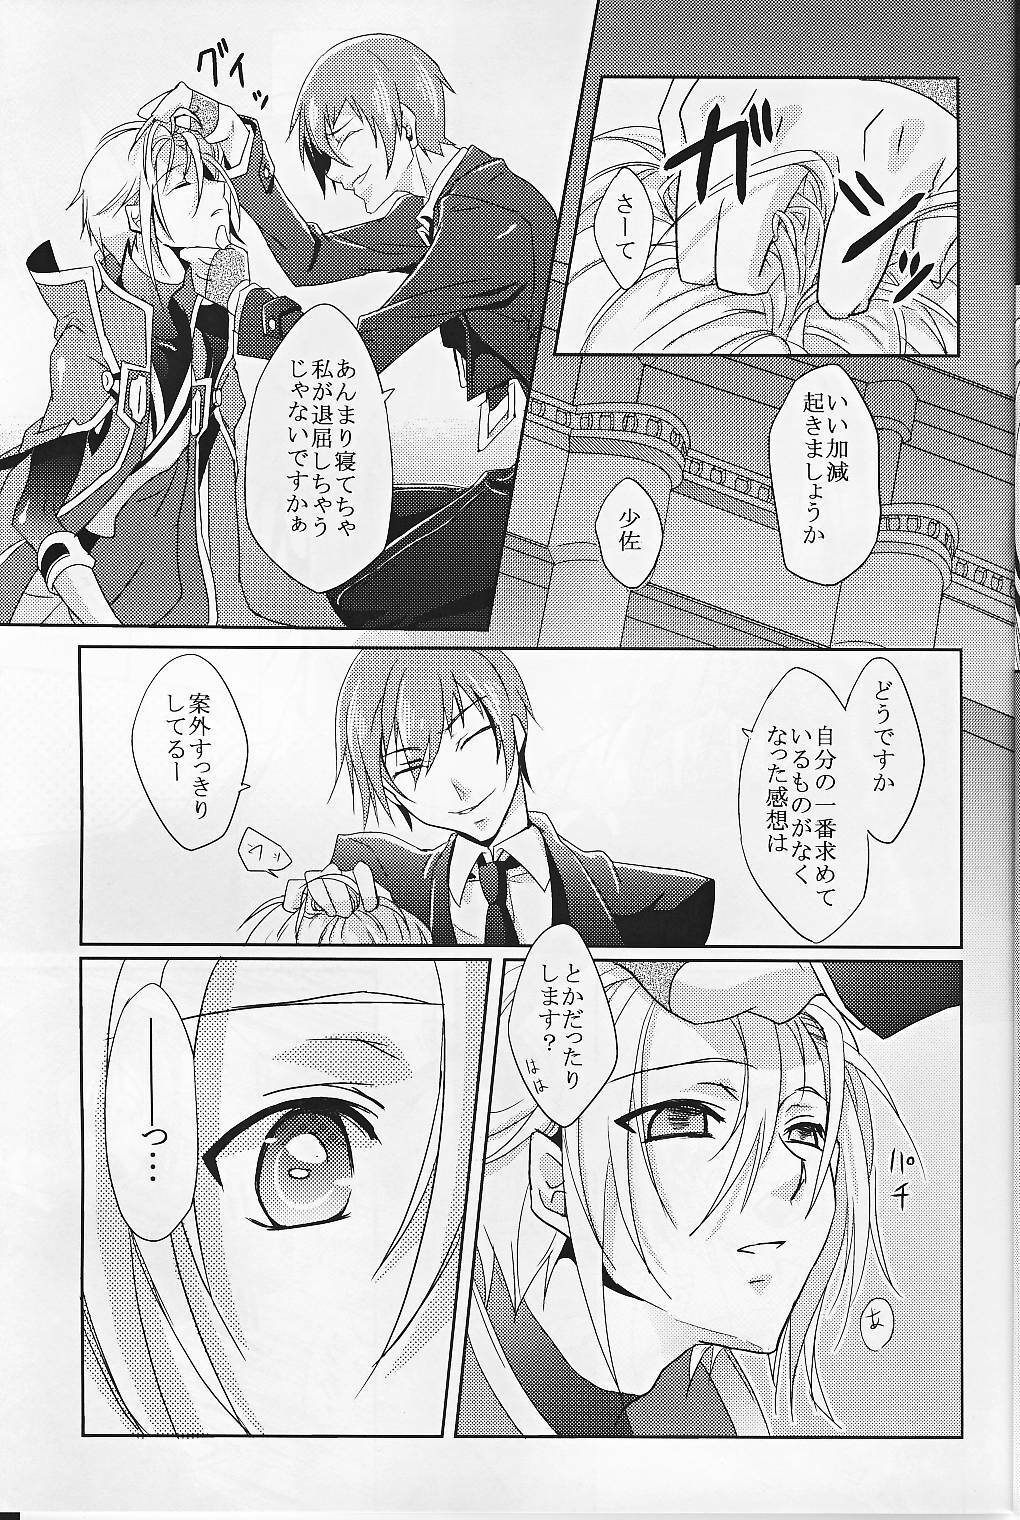 [smat. (Akatsuki Tomato)] Silly (BLAZBLUE) page 12 full